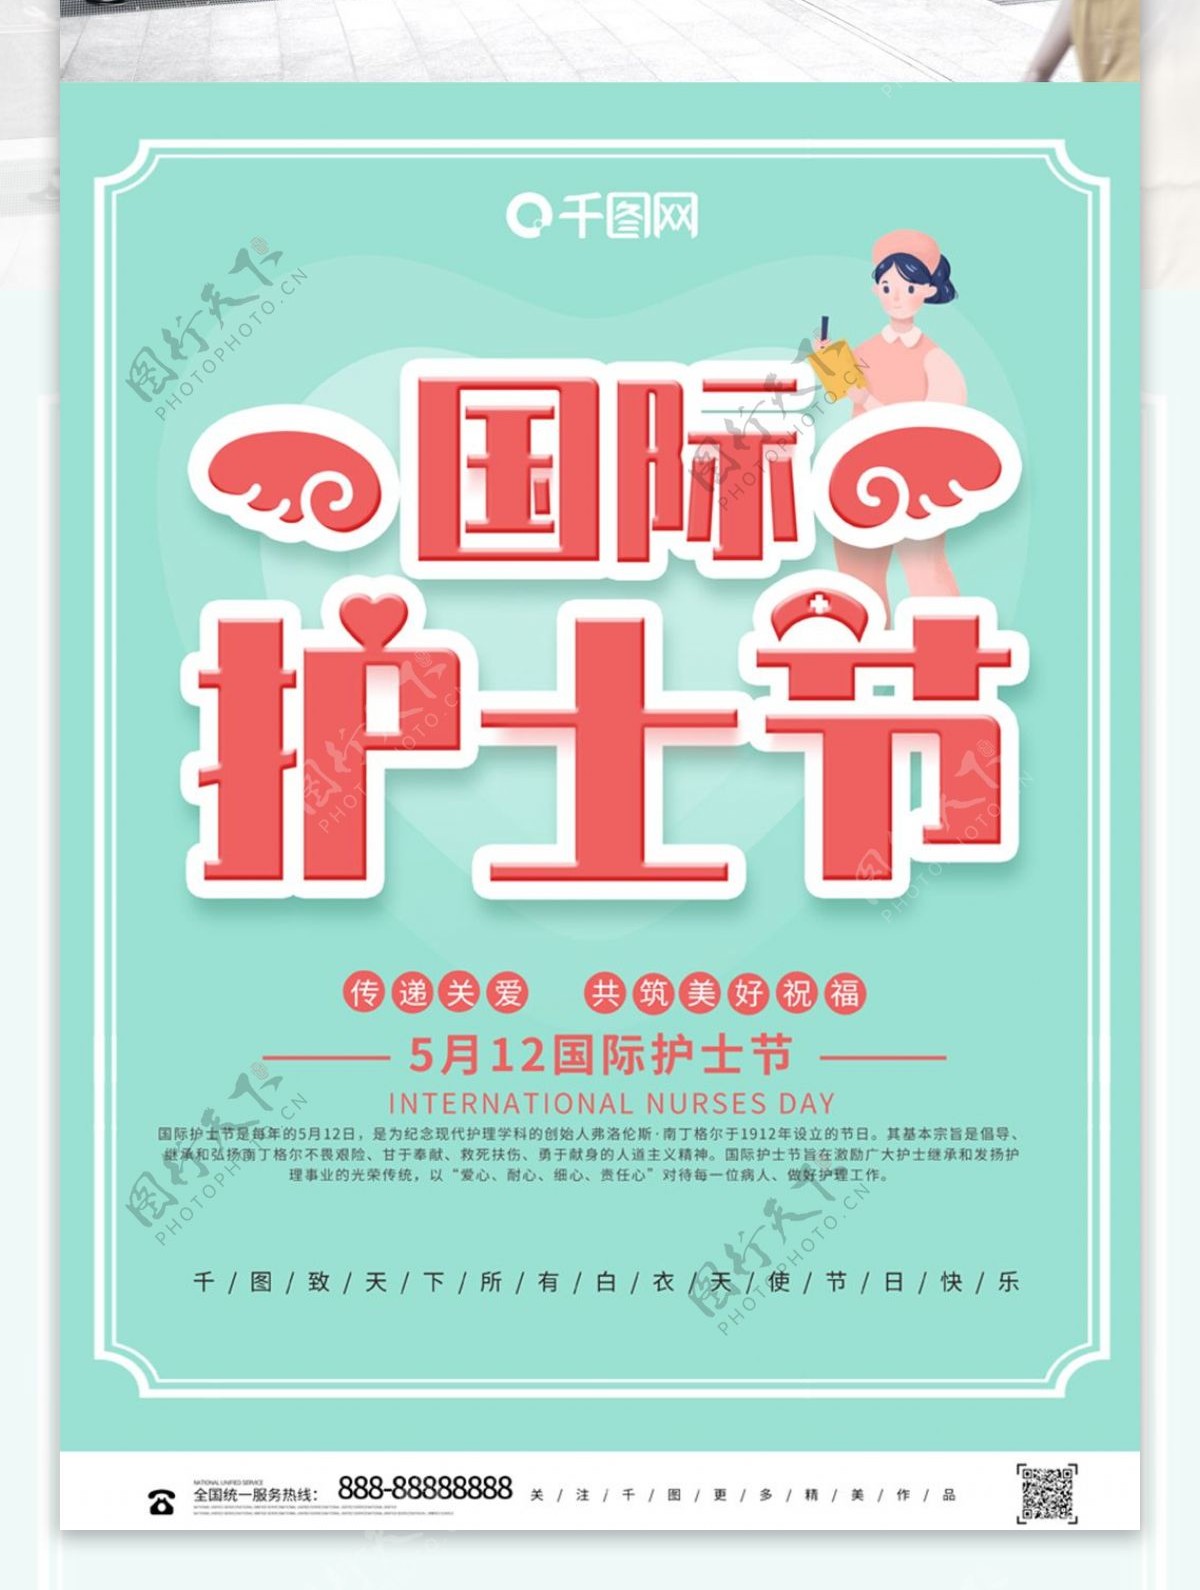 简约大气国际护士节节日公益宣传海报